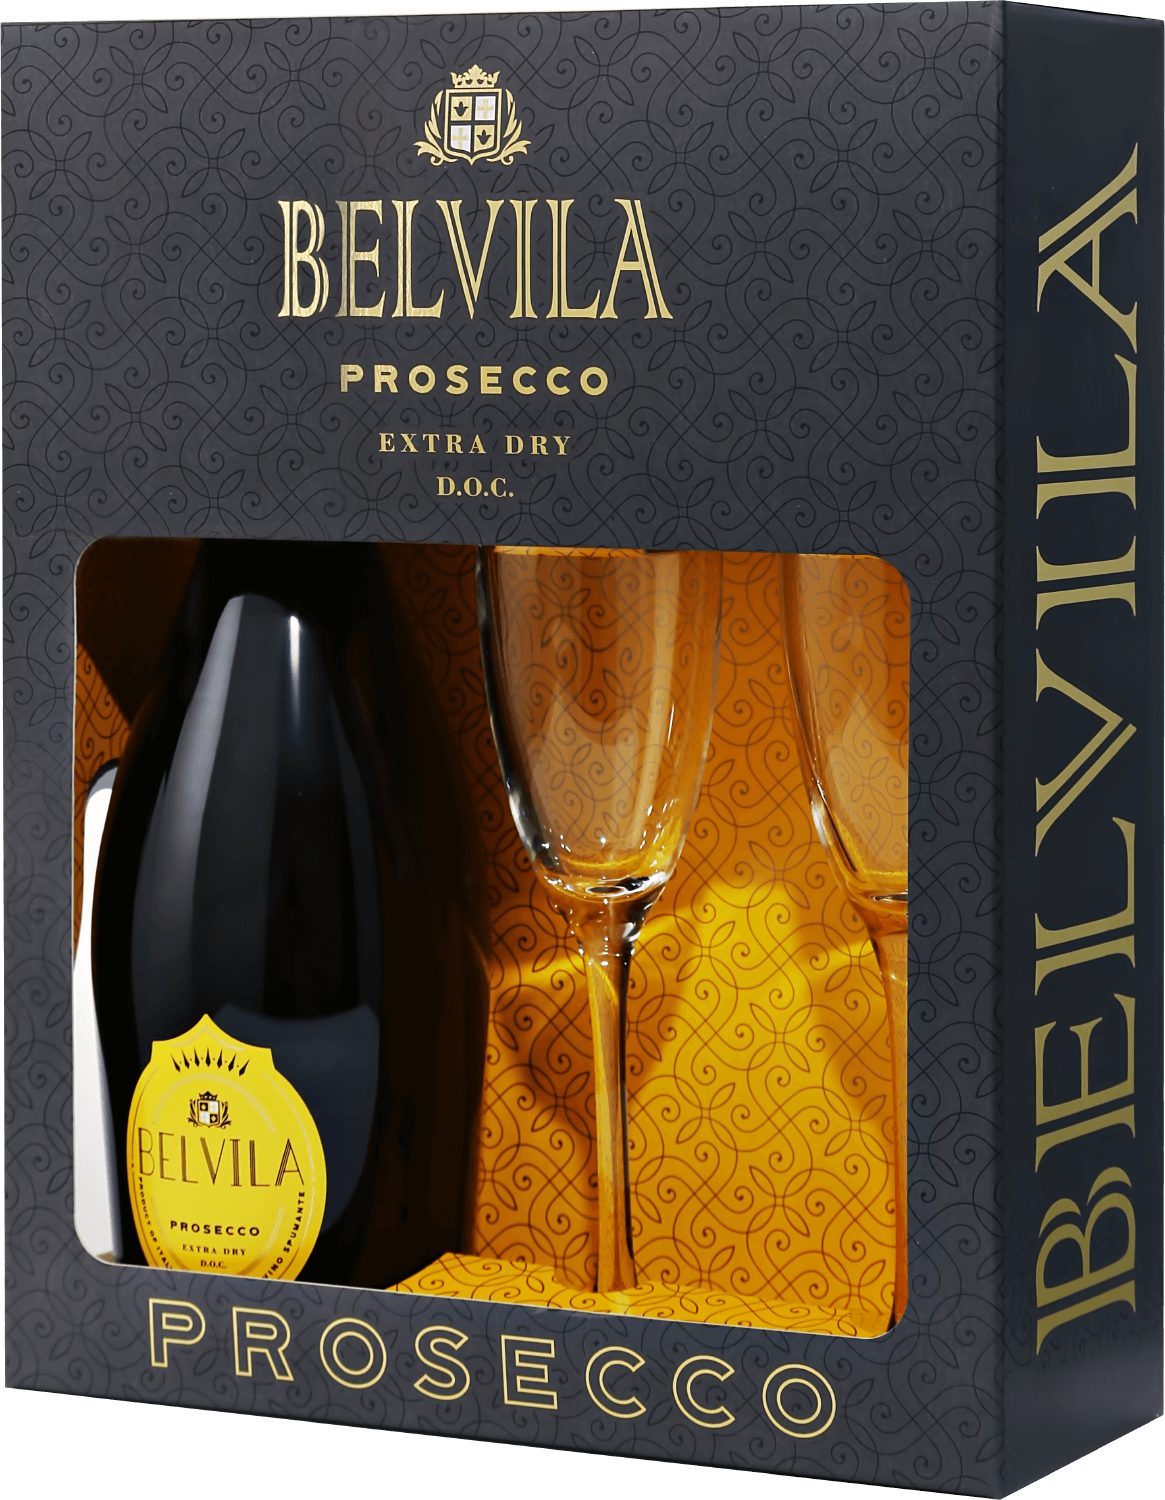 Belvila Prosecco DOC Spumante Extra Dry Villa Degli Olmi (gift box) alberto nani biologico prosecco doc extra dry enoitalia